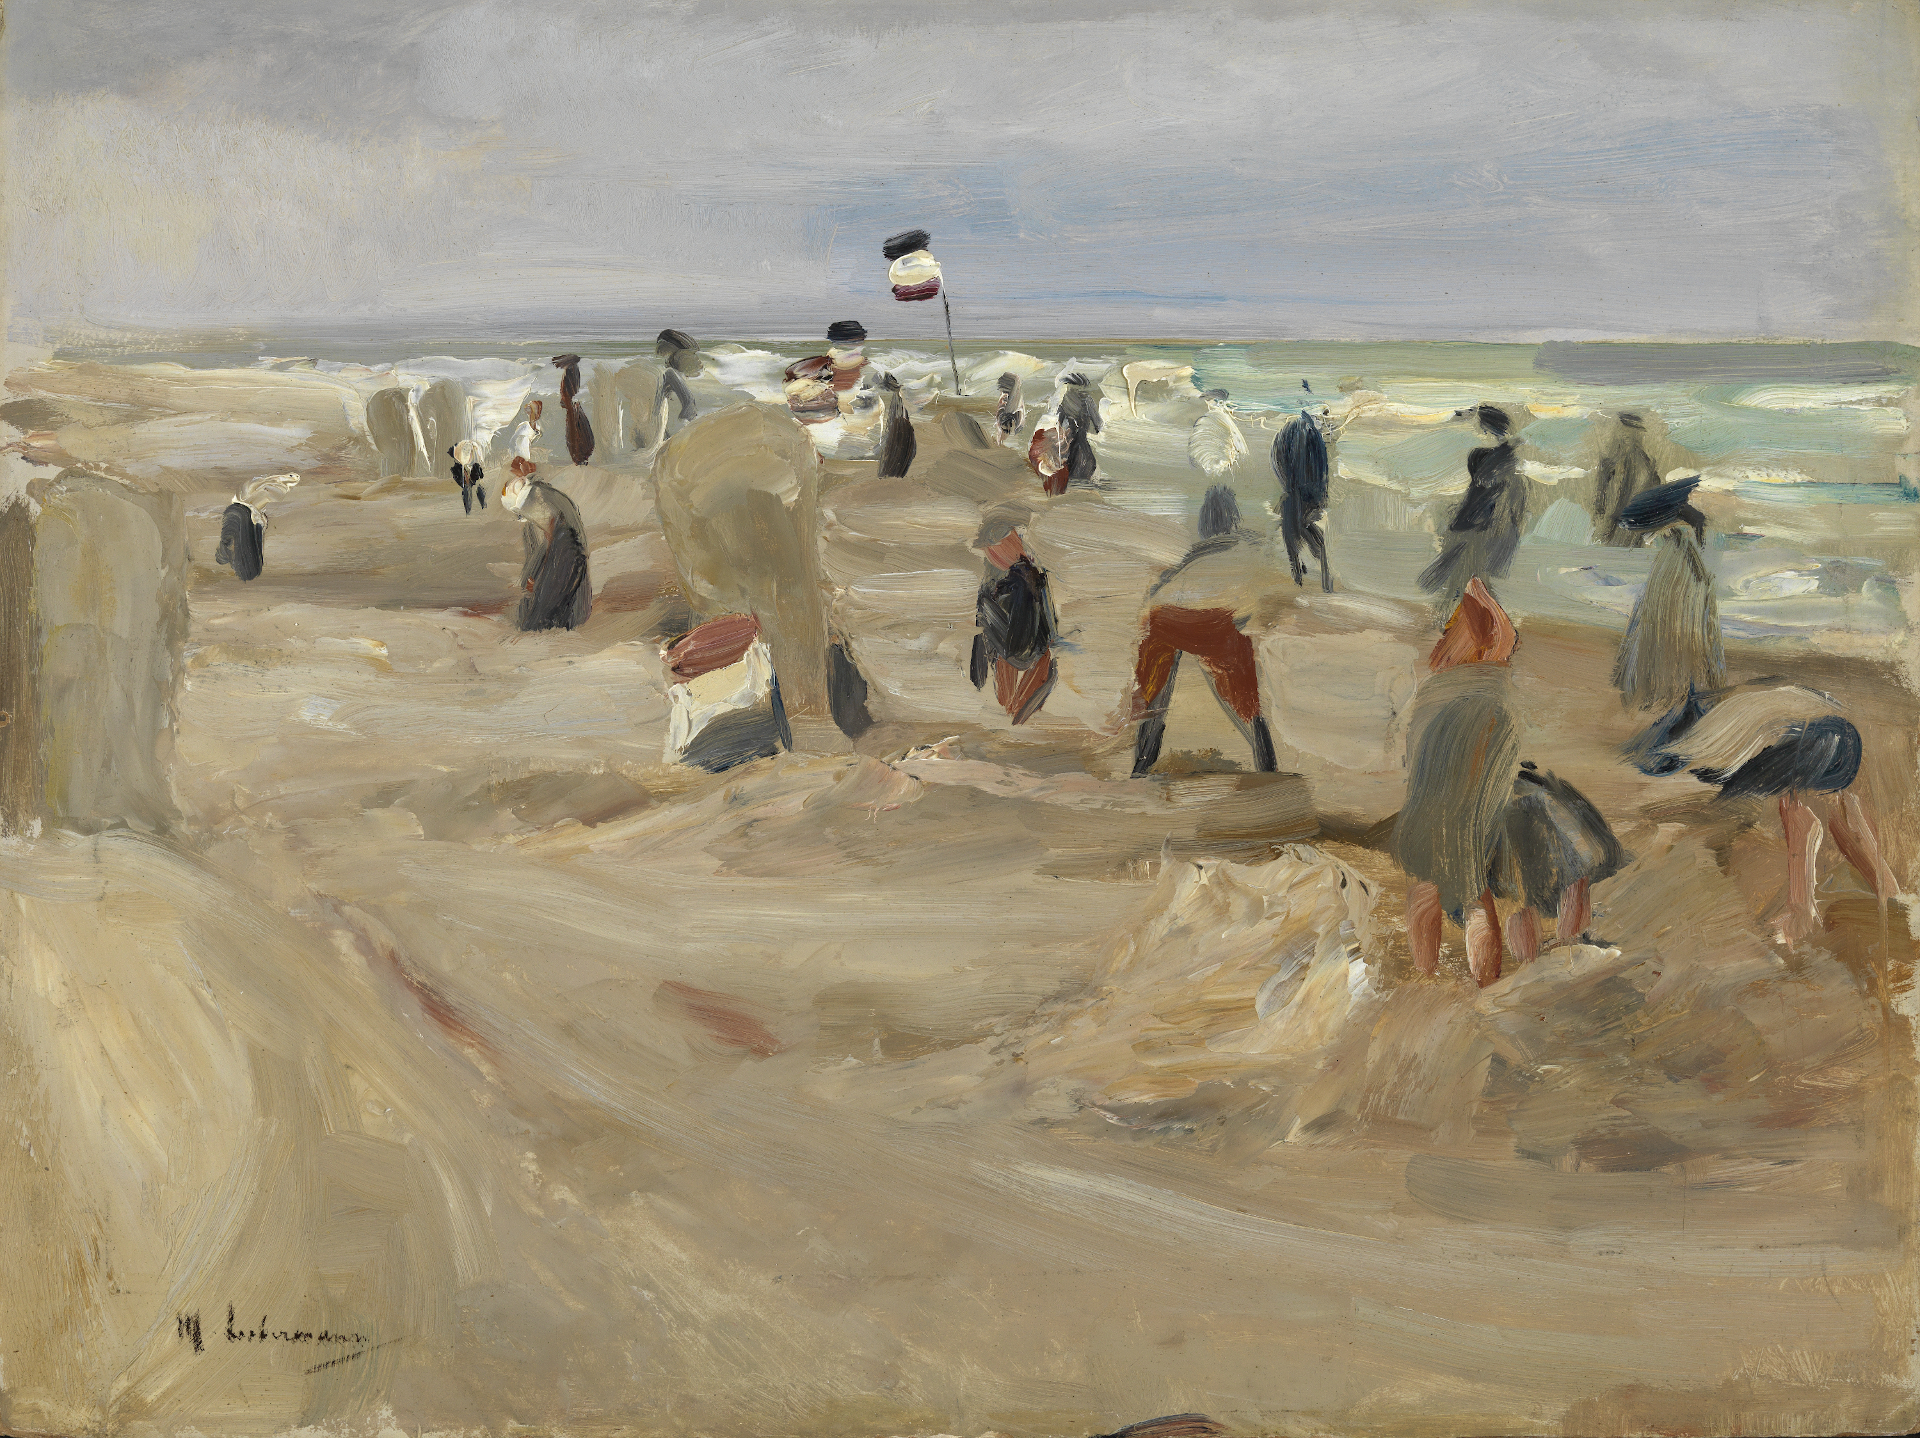 Abbildung des Werks Am Strand von Noordwijk von Max Liebermann, entstanden 1908. Zu sehen sind Menschen am Strand.